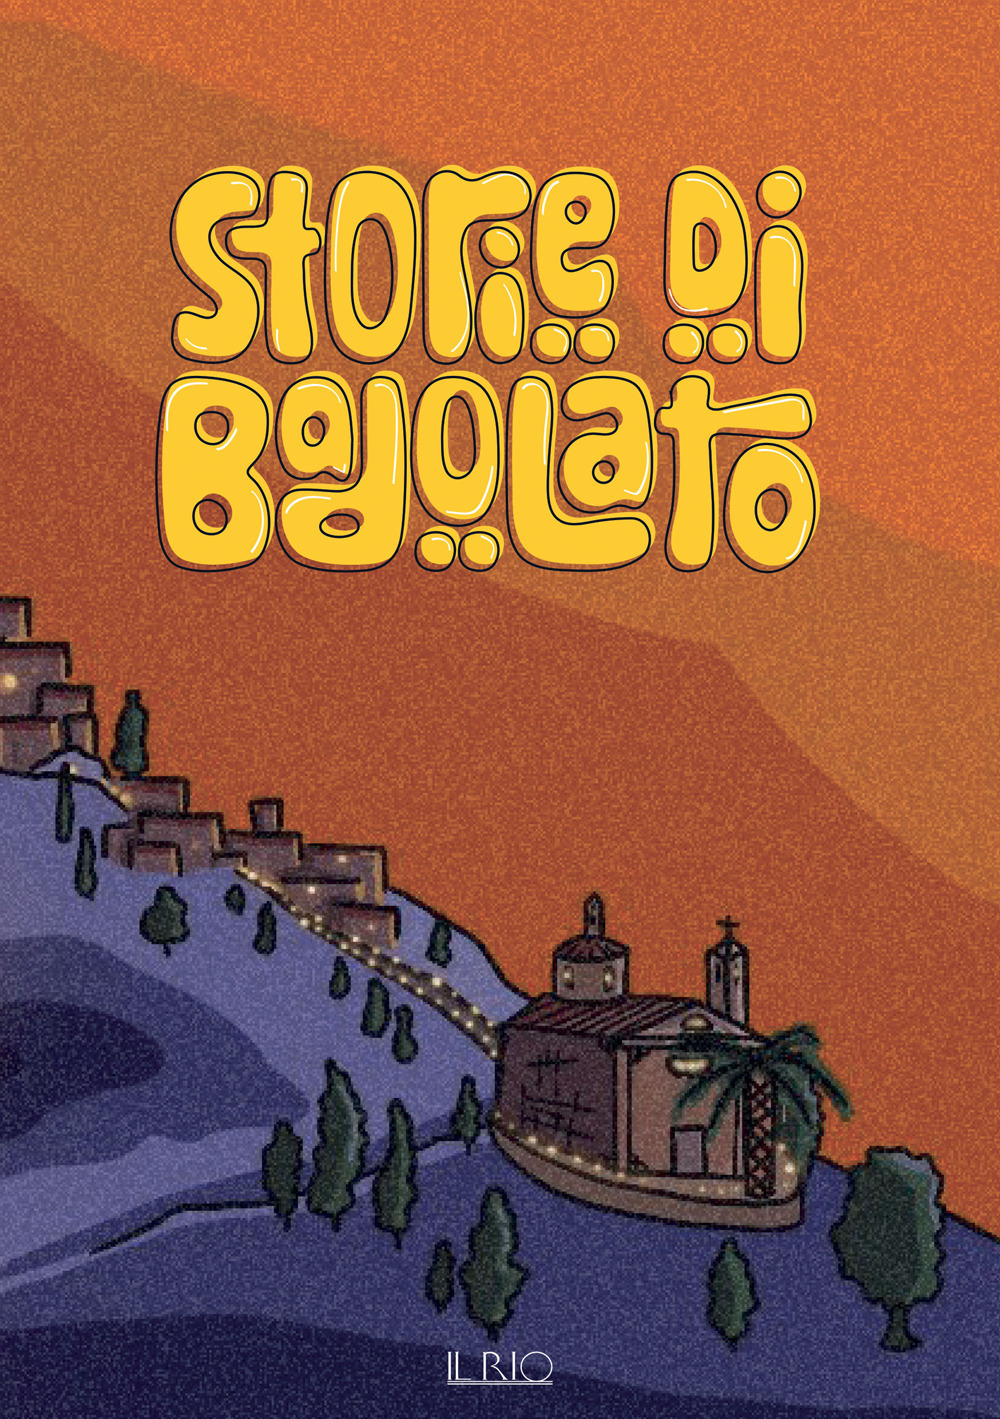 Storie di Badolato. Guida didattica per bambini sulle storie, le tradizioni e i luoghi di Badolato